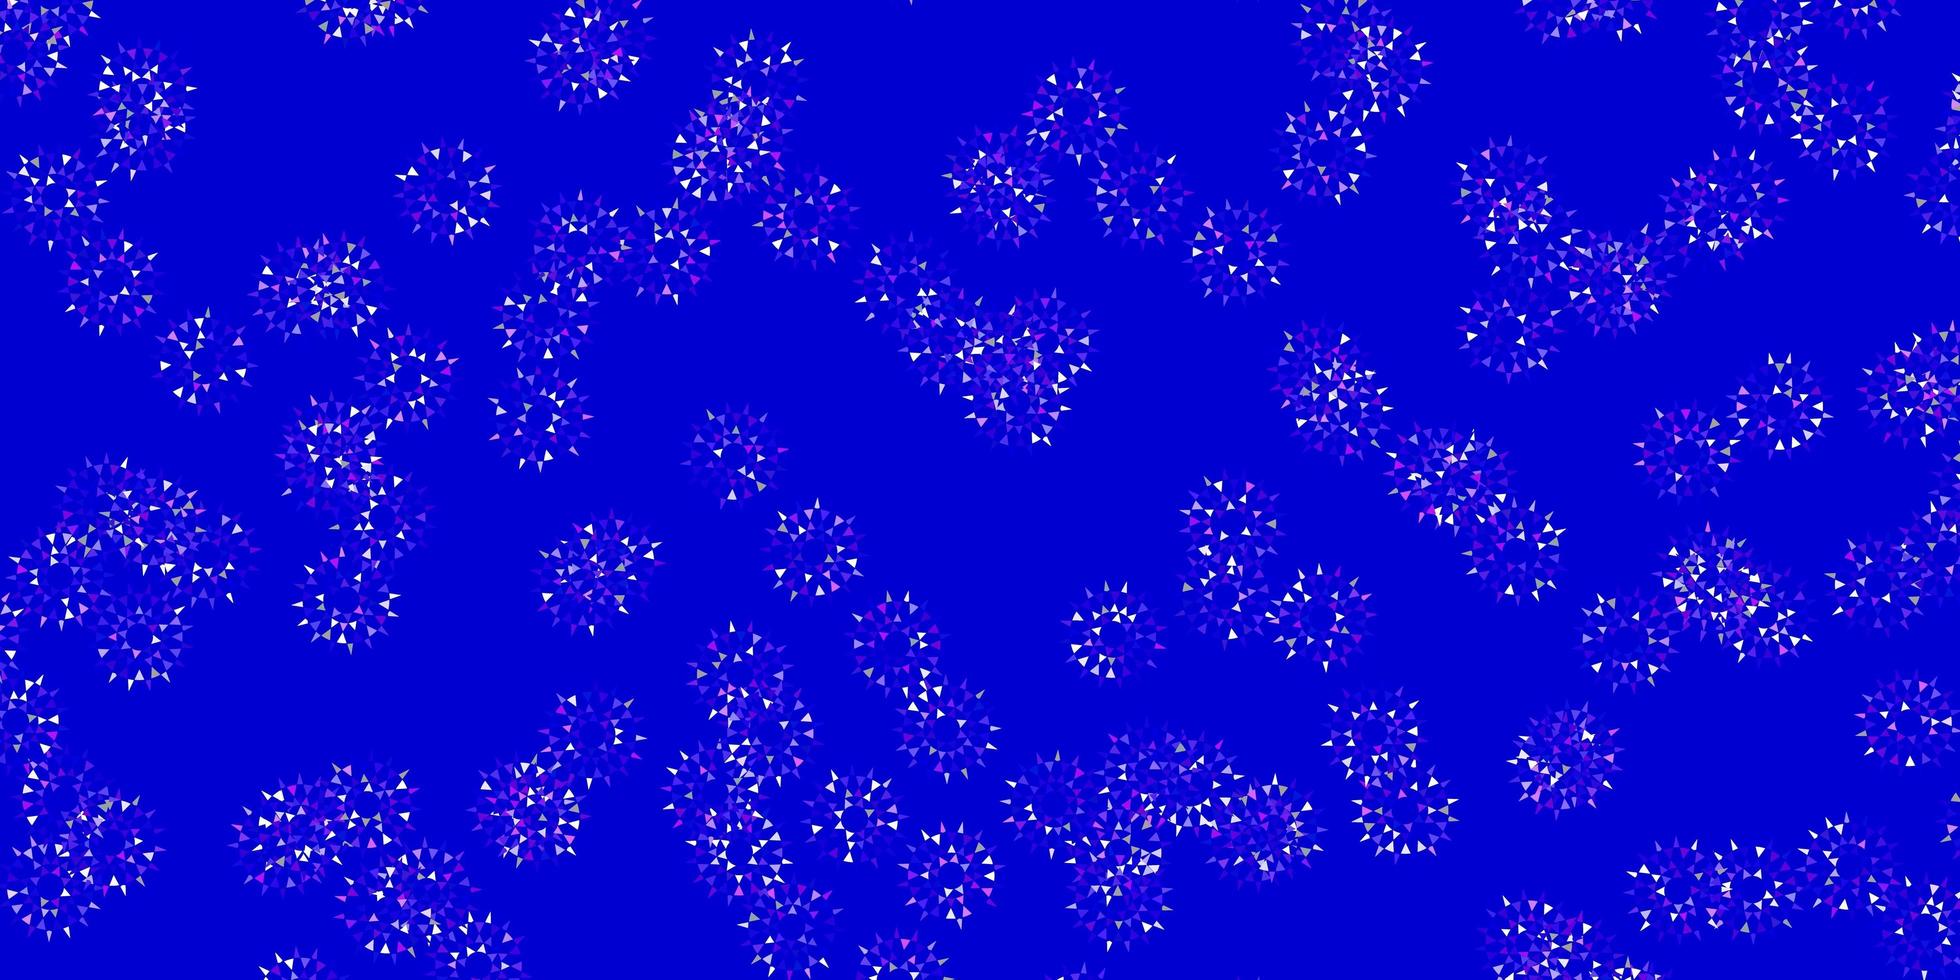 ilustraciones naturales de vector azul claro, rojo con flores.